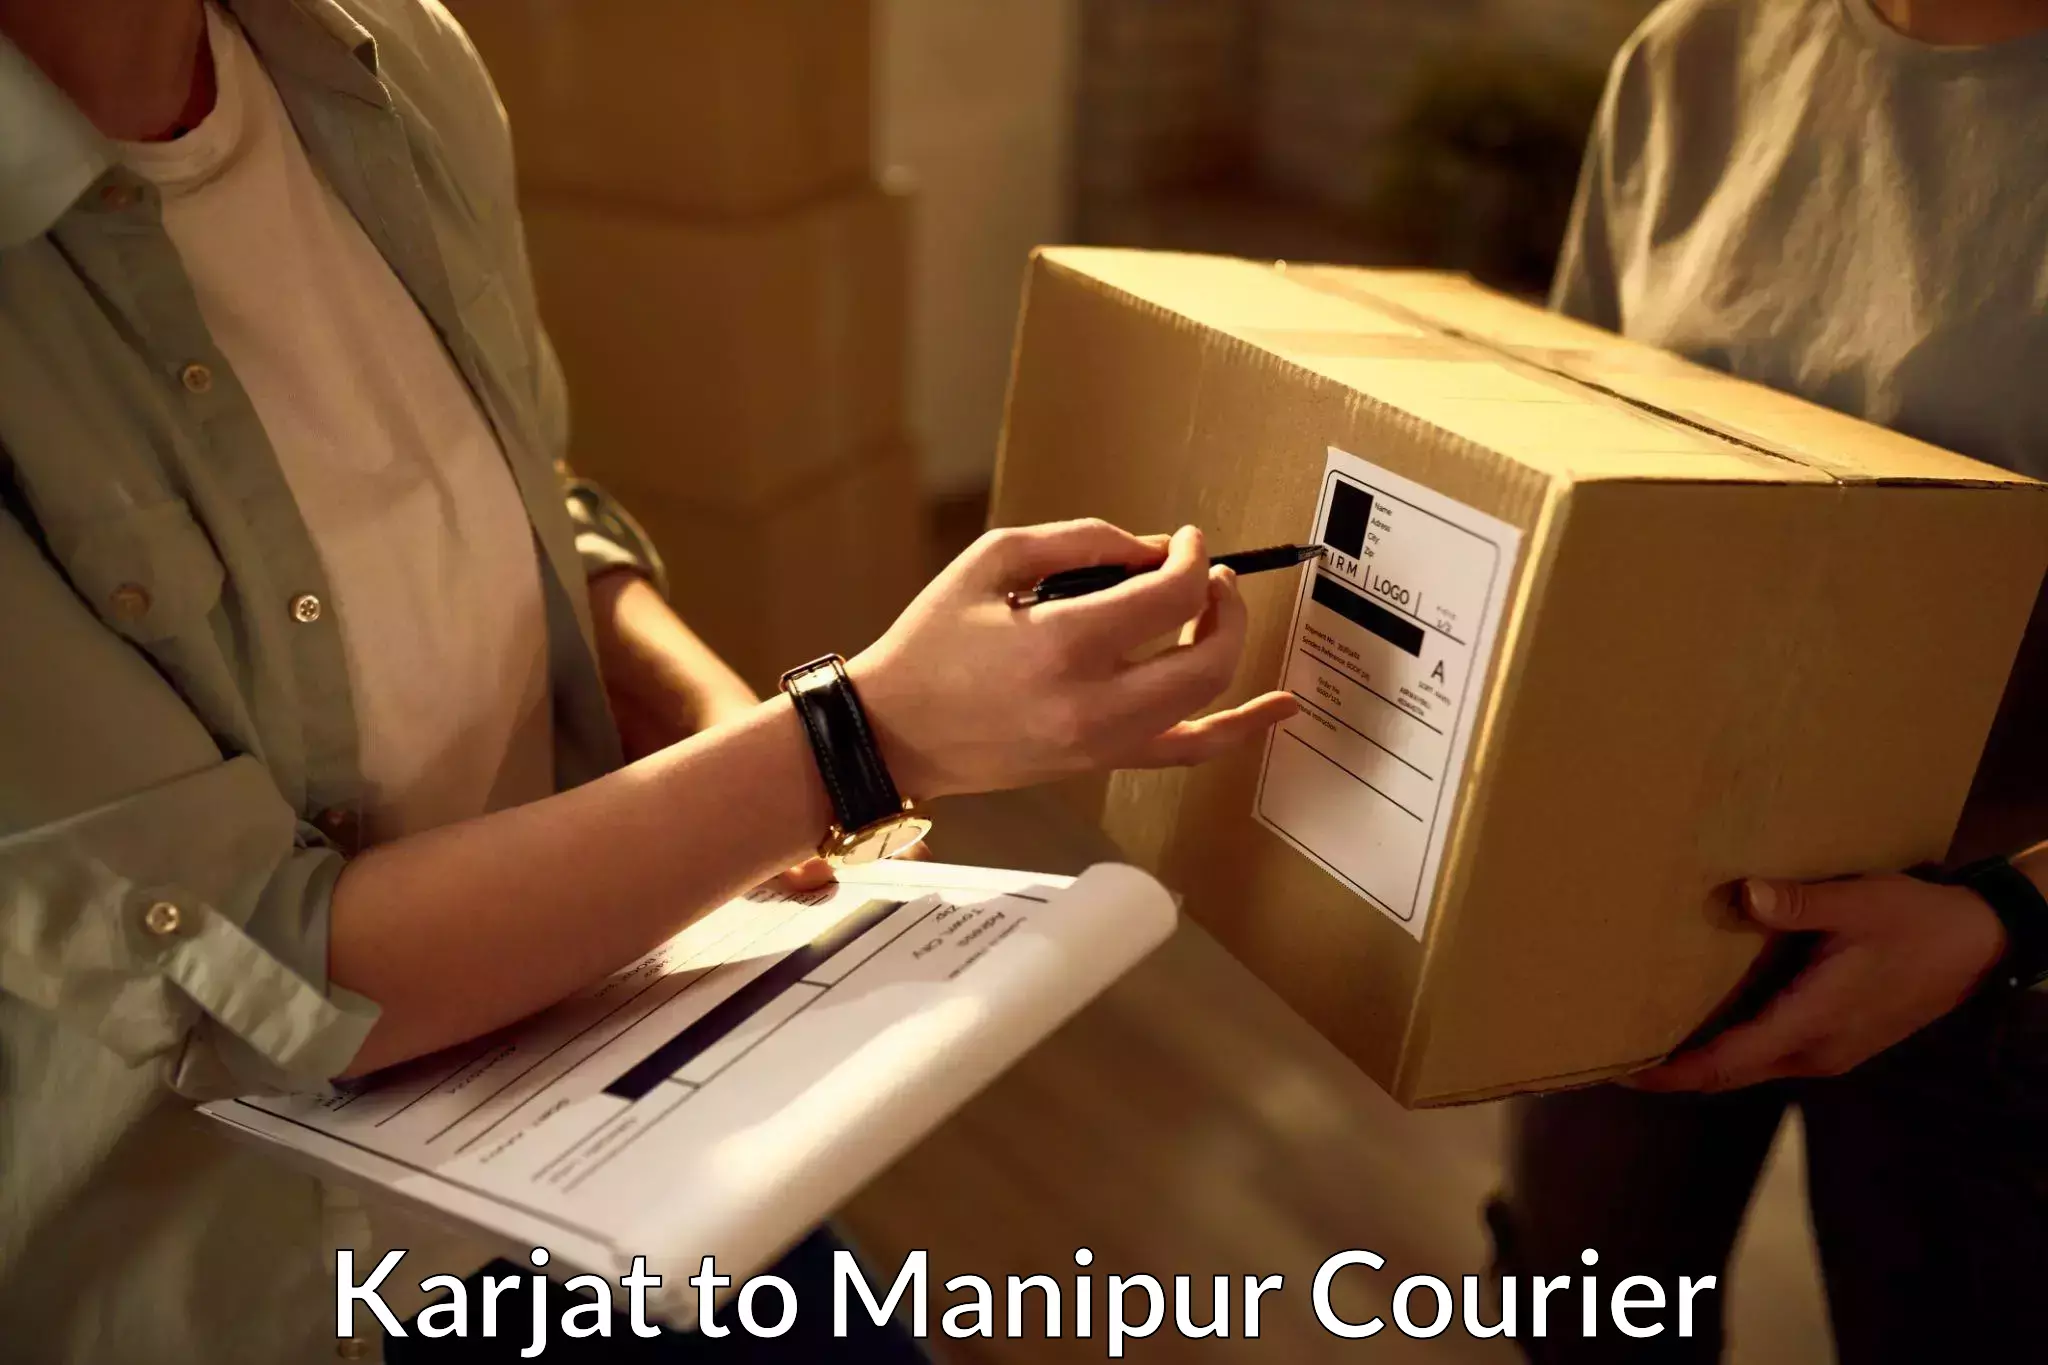 Global parcel delivery Karjat to Manipur